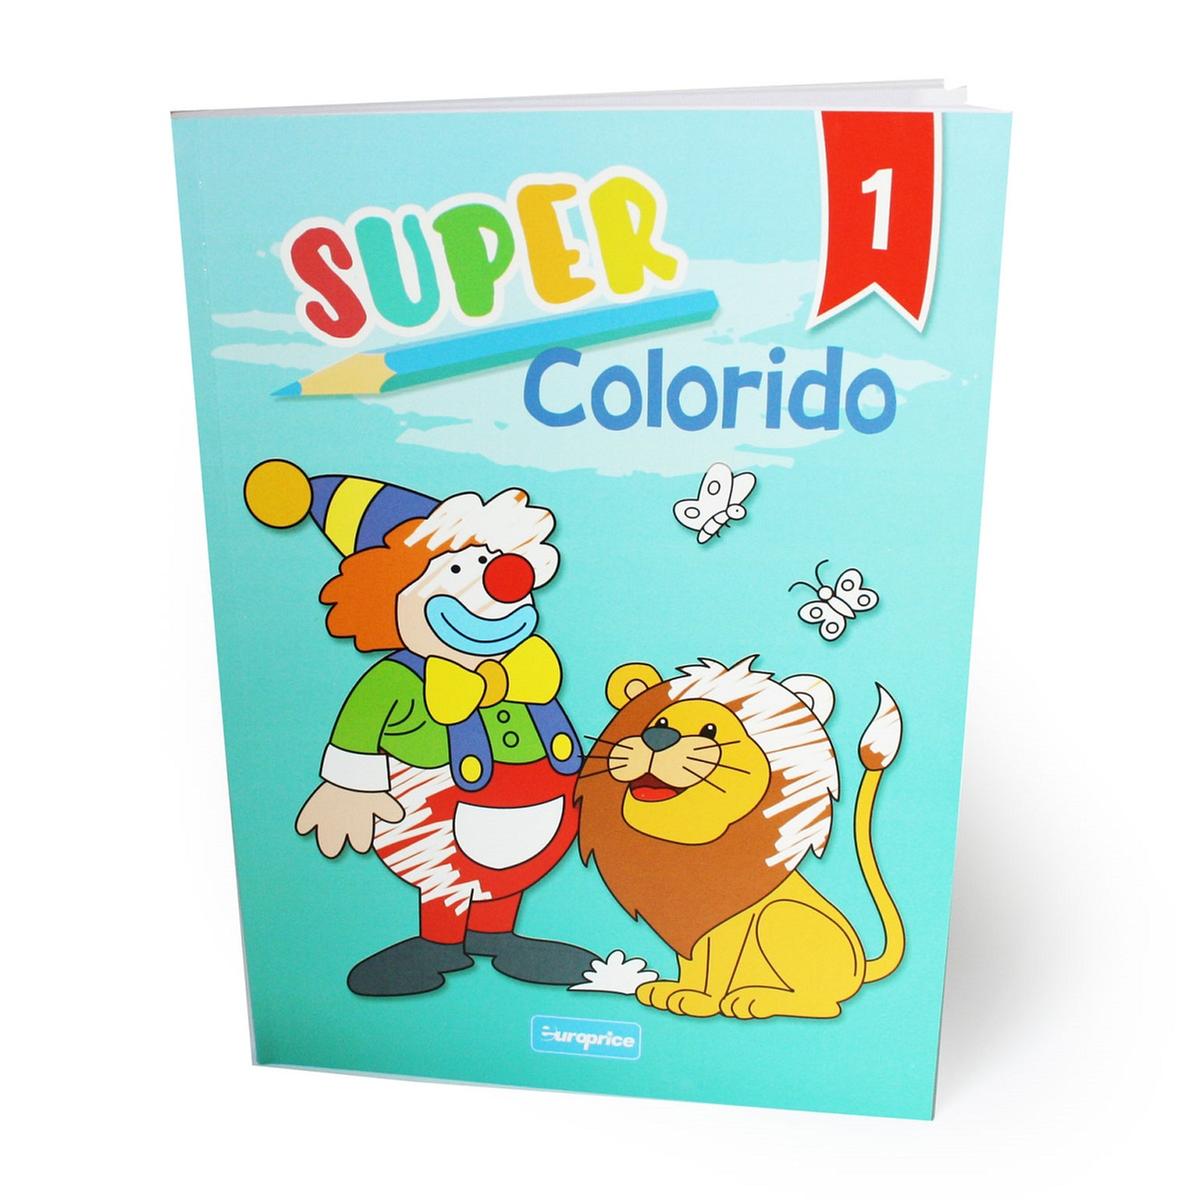 Super colorido - Livro de colorir (vários modelos) | Infantil de 3 a 6 anos  Pot | Loja de brinquedos e videojogos Online Toysrus